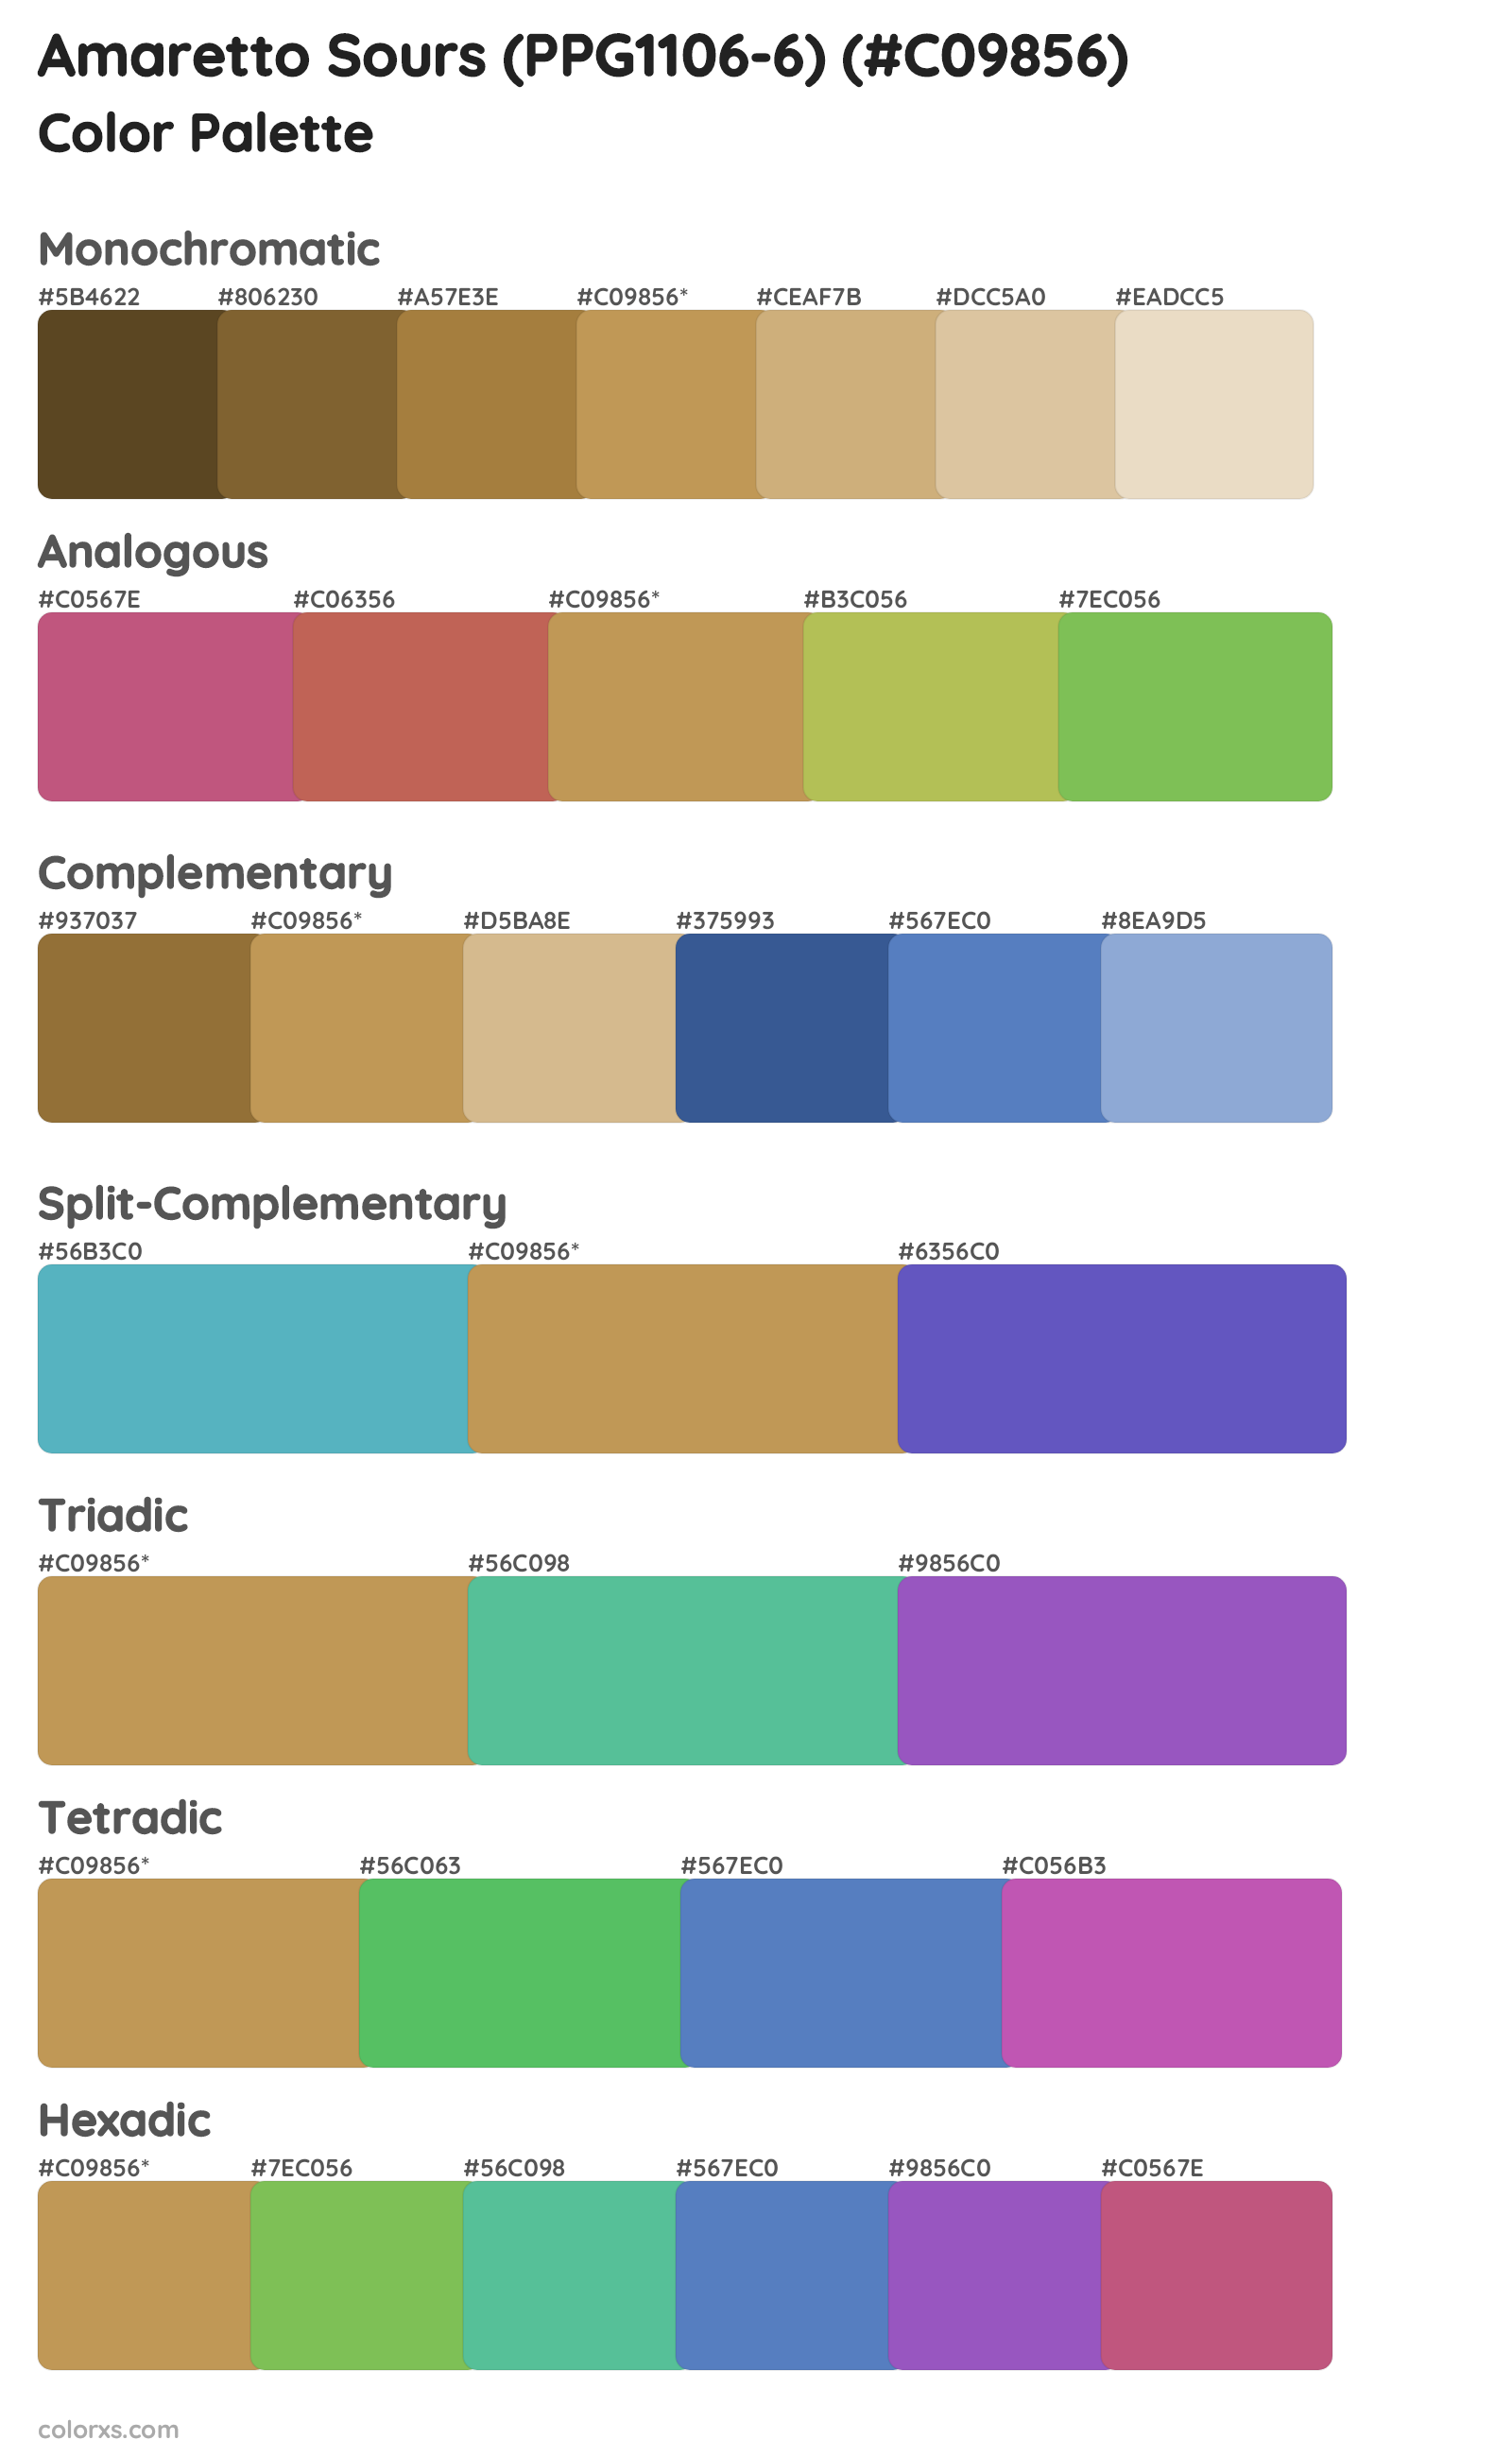 Amaretto Sours (PPG1106-6) Color Scheme Palettes